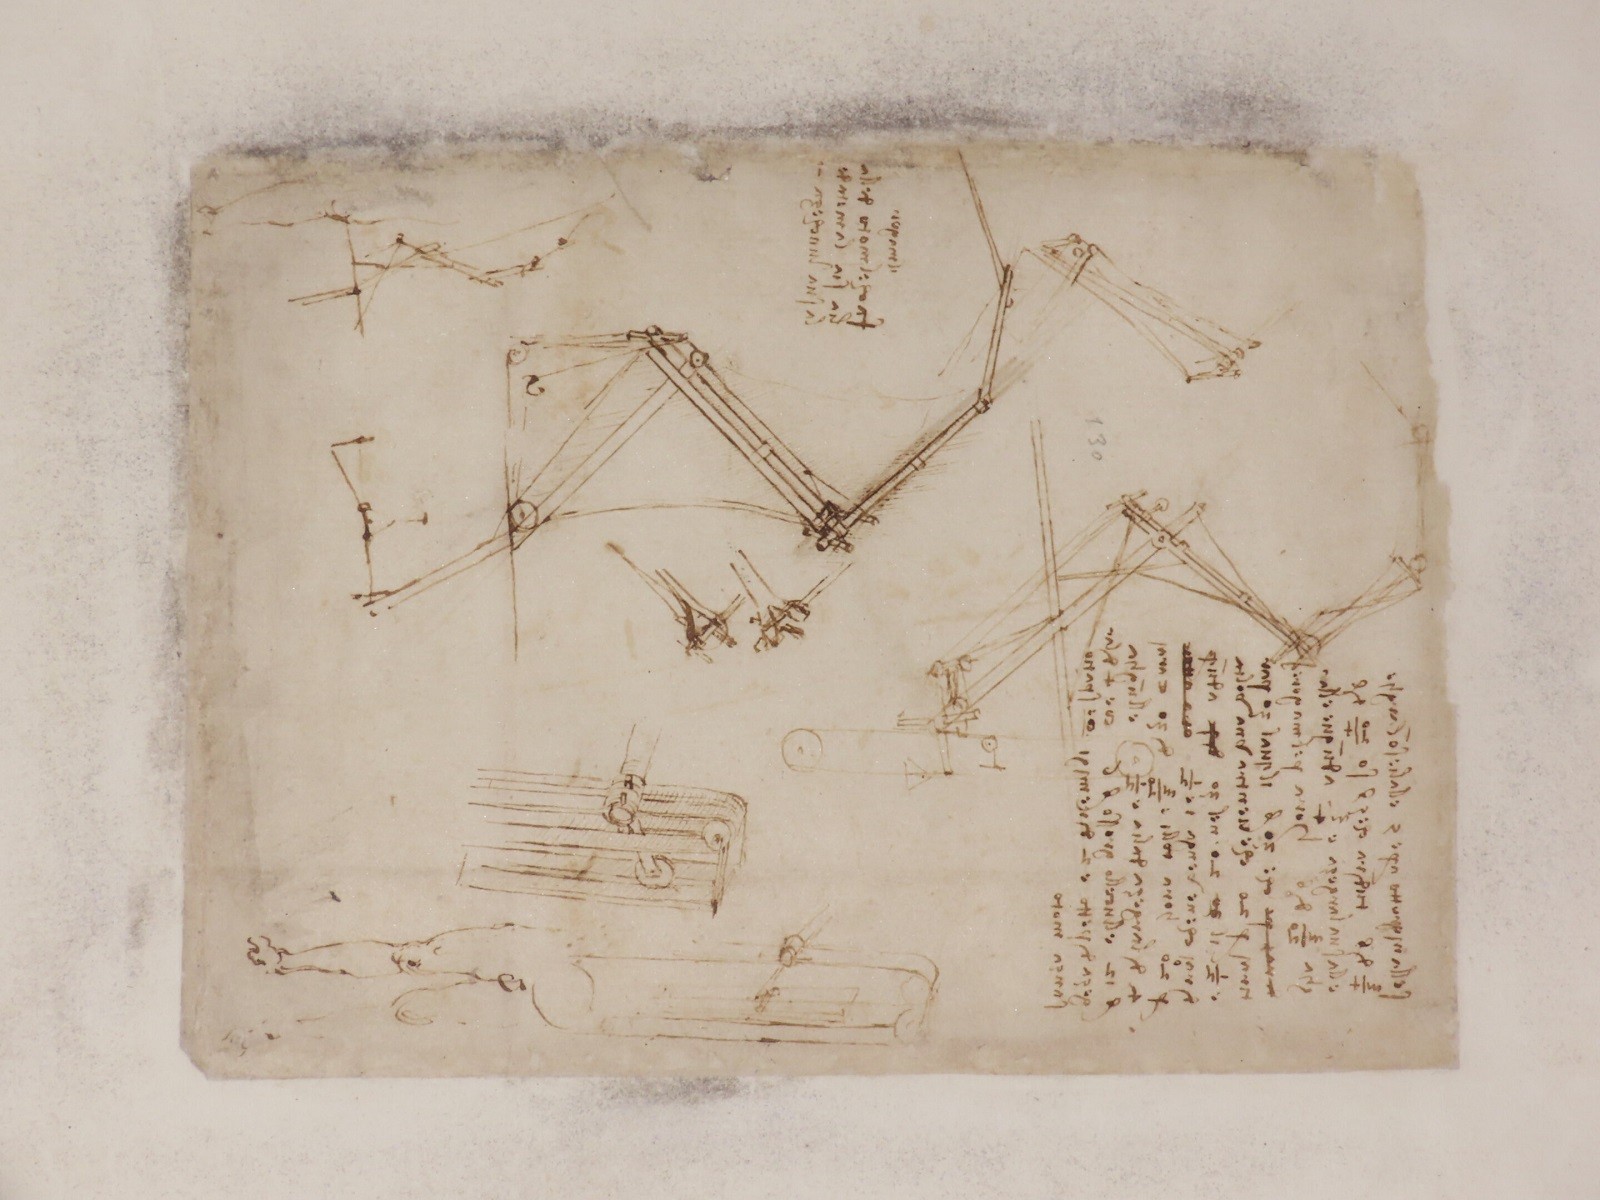 Kodeks Atlantycki celem badań. To zapiski Leonarda da Vinci, na których pojawiły się tajemnicze plamy